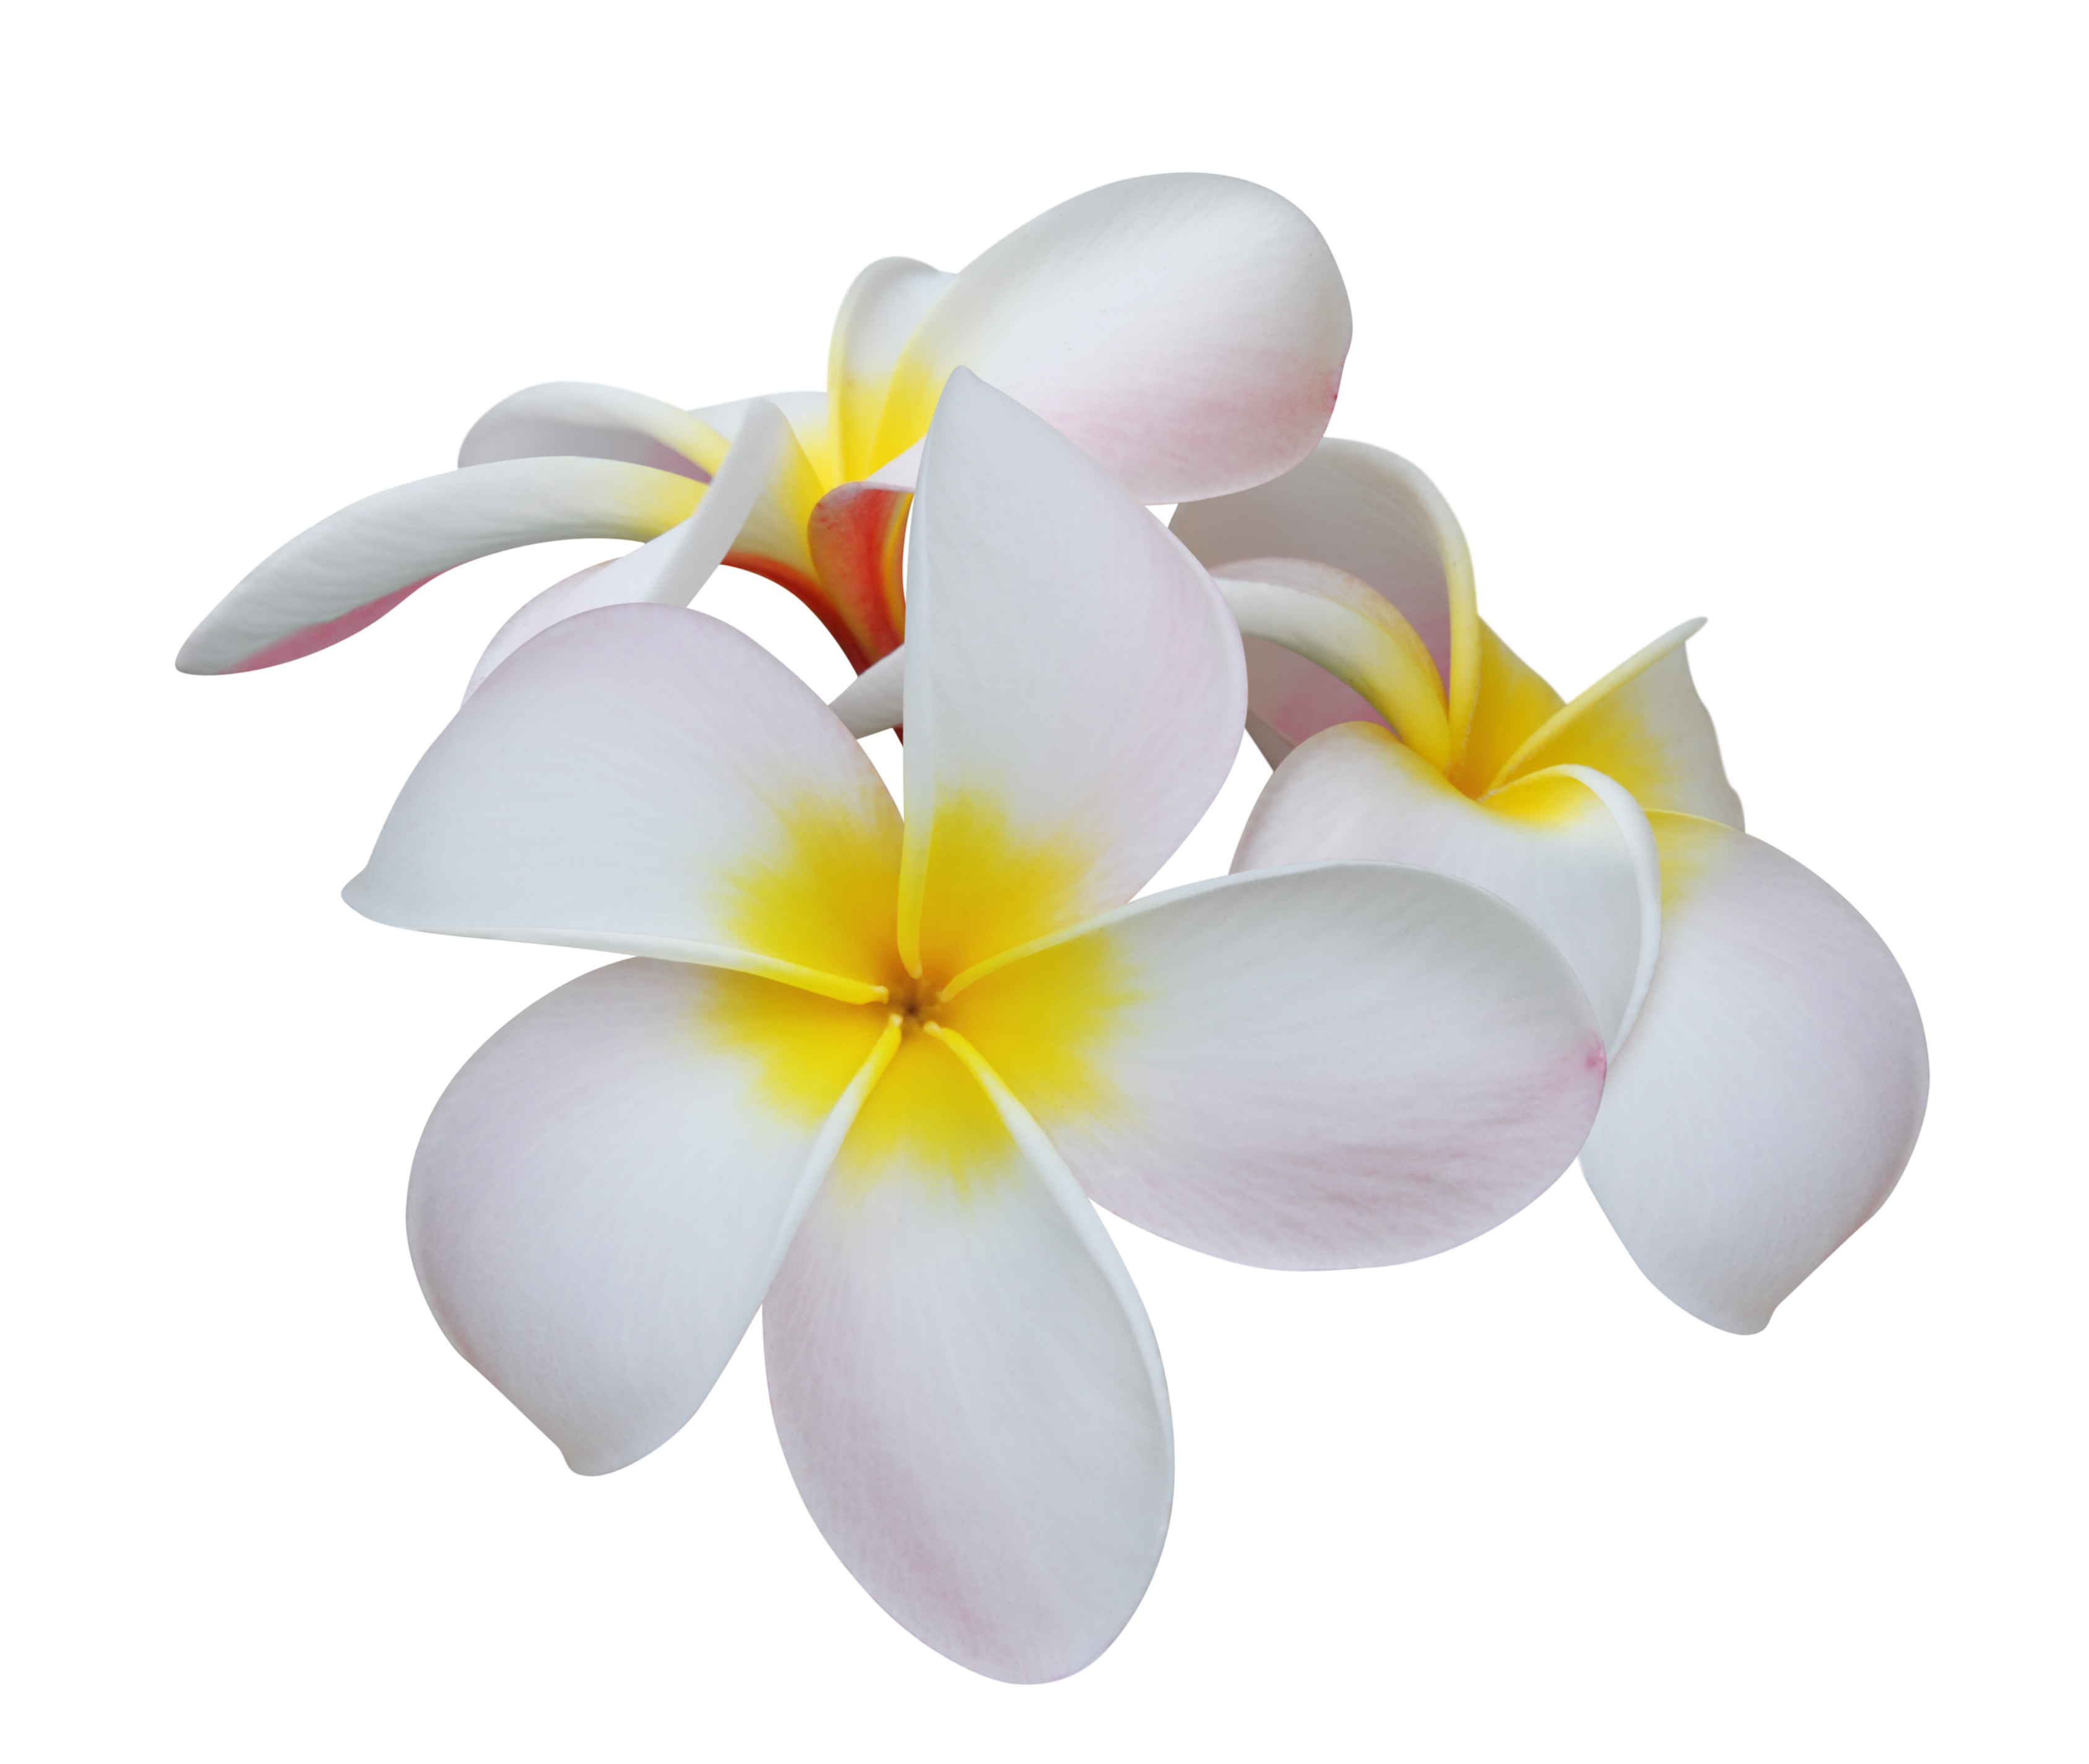 ハワイアンジュエリーのモチーフに込められた意味とは ハワイアンジュエリー ペアリング ペアネックレスに人気ハワイアンジュエリー 通販silver Tree